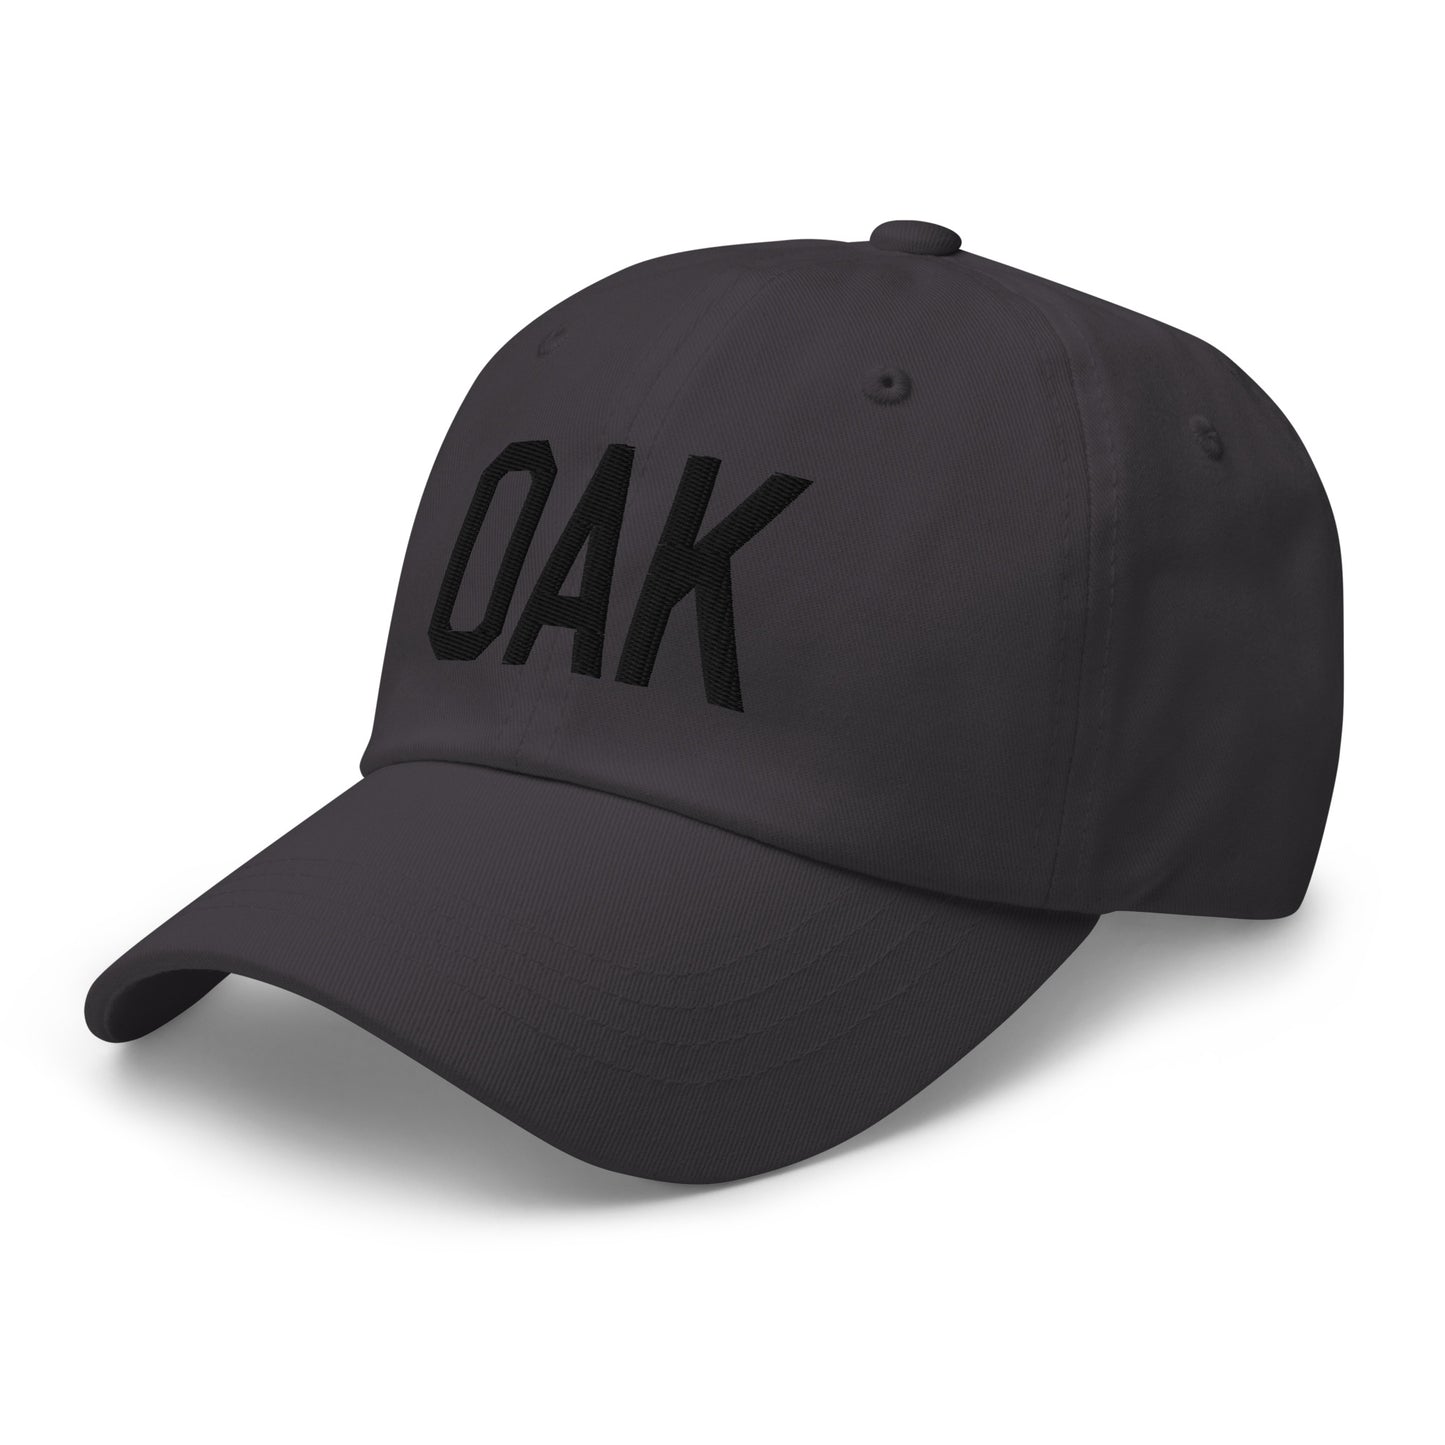 Airport Code Baseball Cap - Black • OAK Oakland • YHM Designs - Image 01